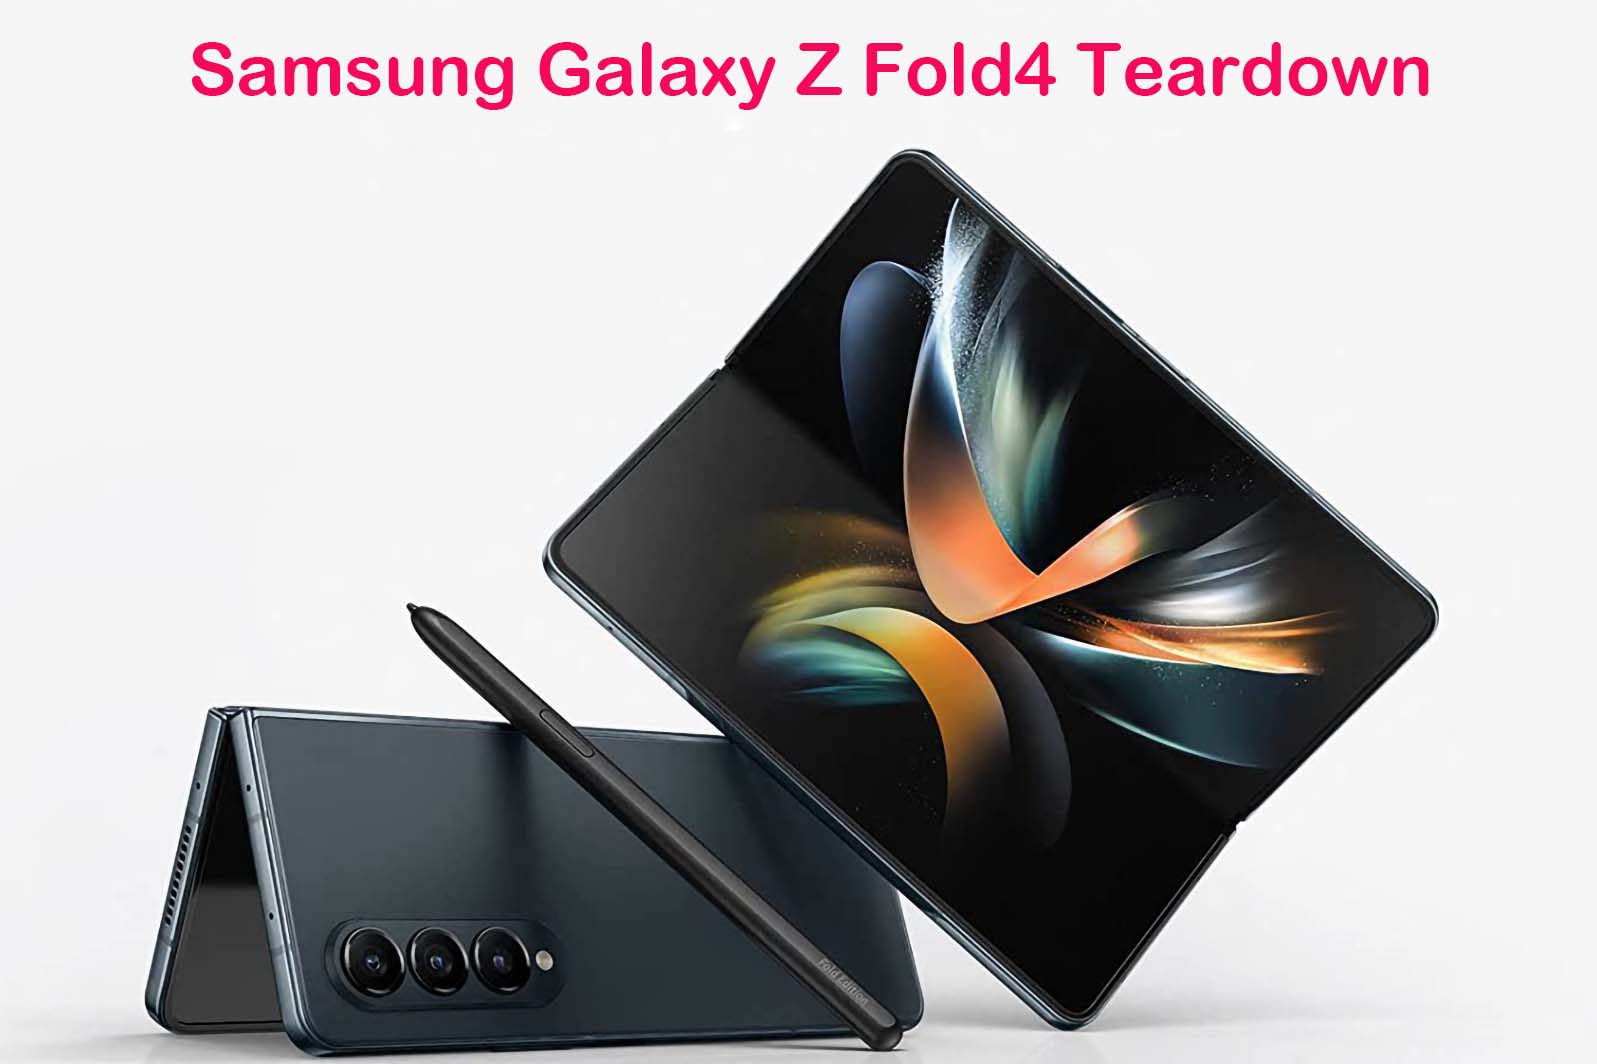 Samsung Galaxy Z Fold4 Teardown Video